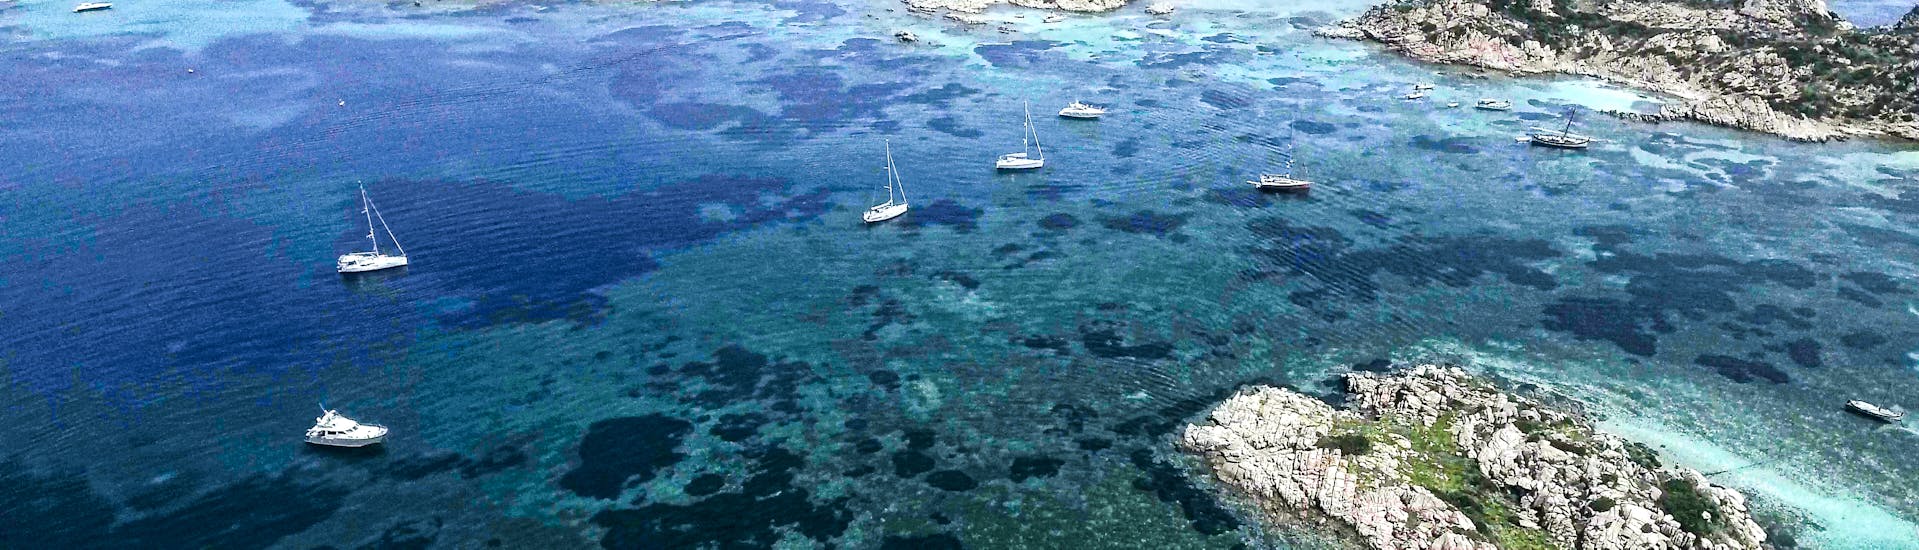 Le isole dell'Arcipelago della Maddalena che si possono visitare durante il viaggio privato in barca intorno al Nord della Sardegna o della Corsica con Maggior leggero Tour La Maddalena.